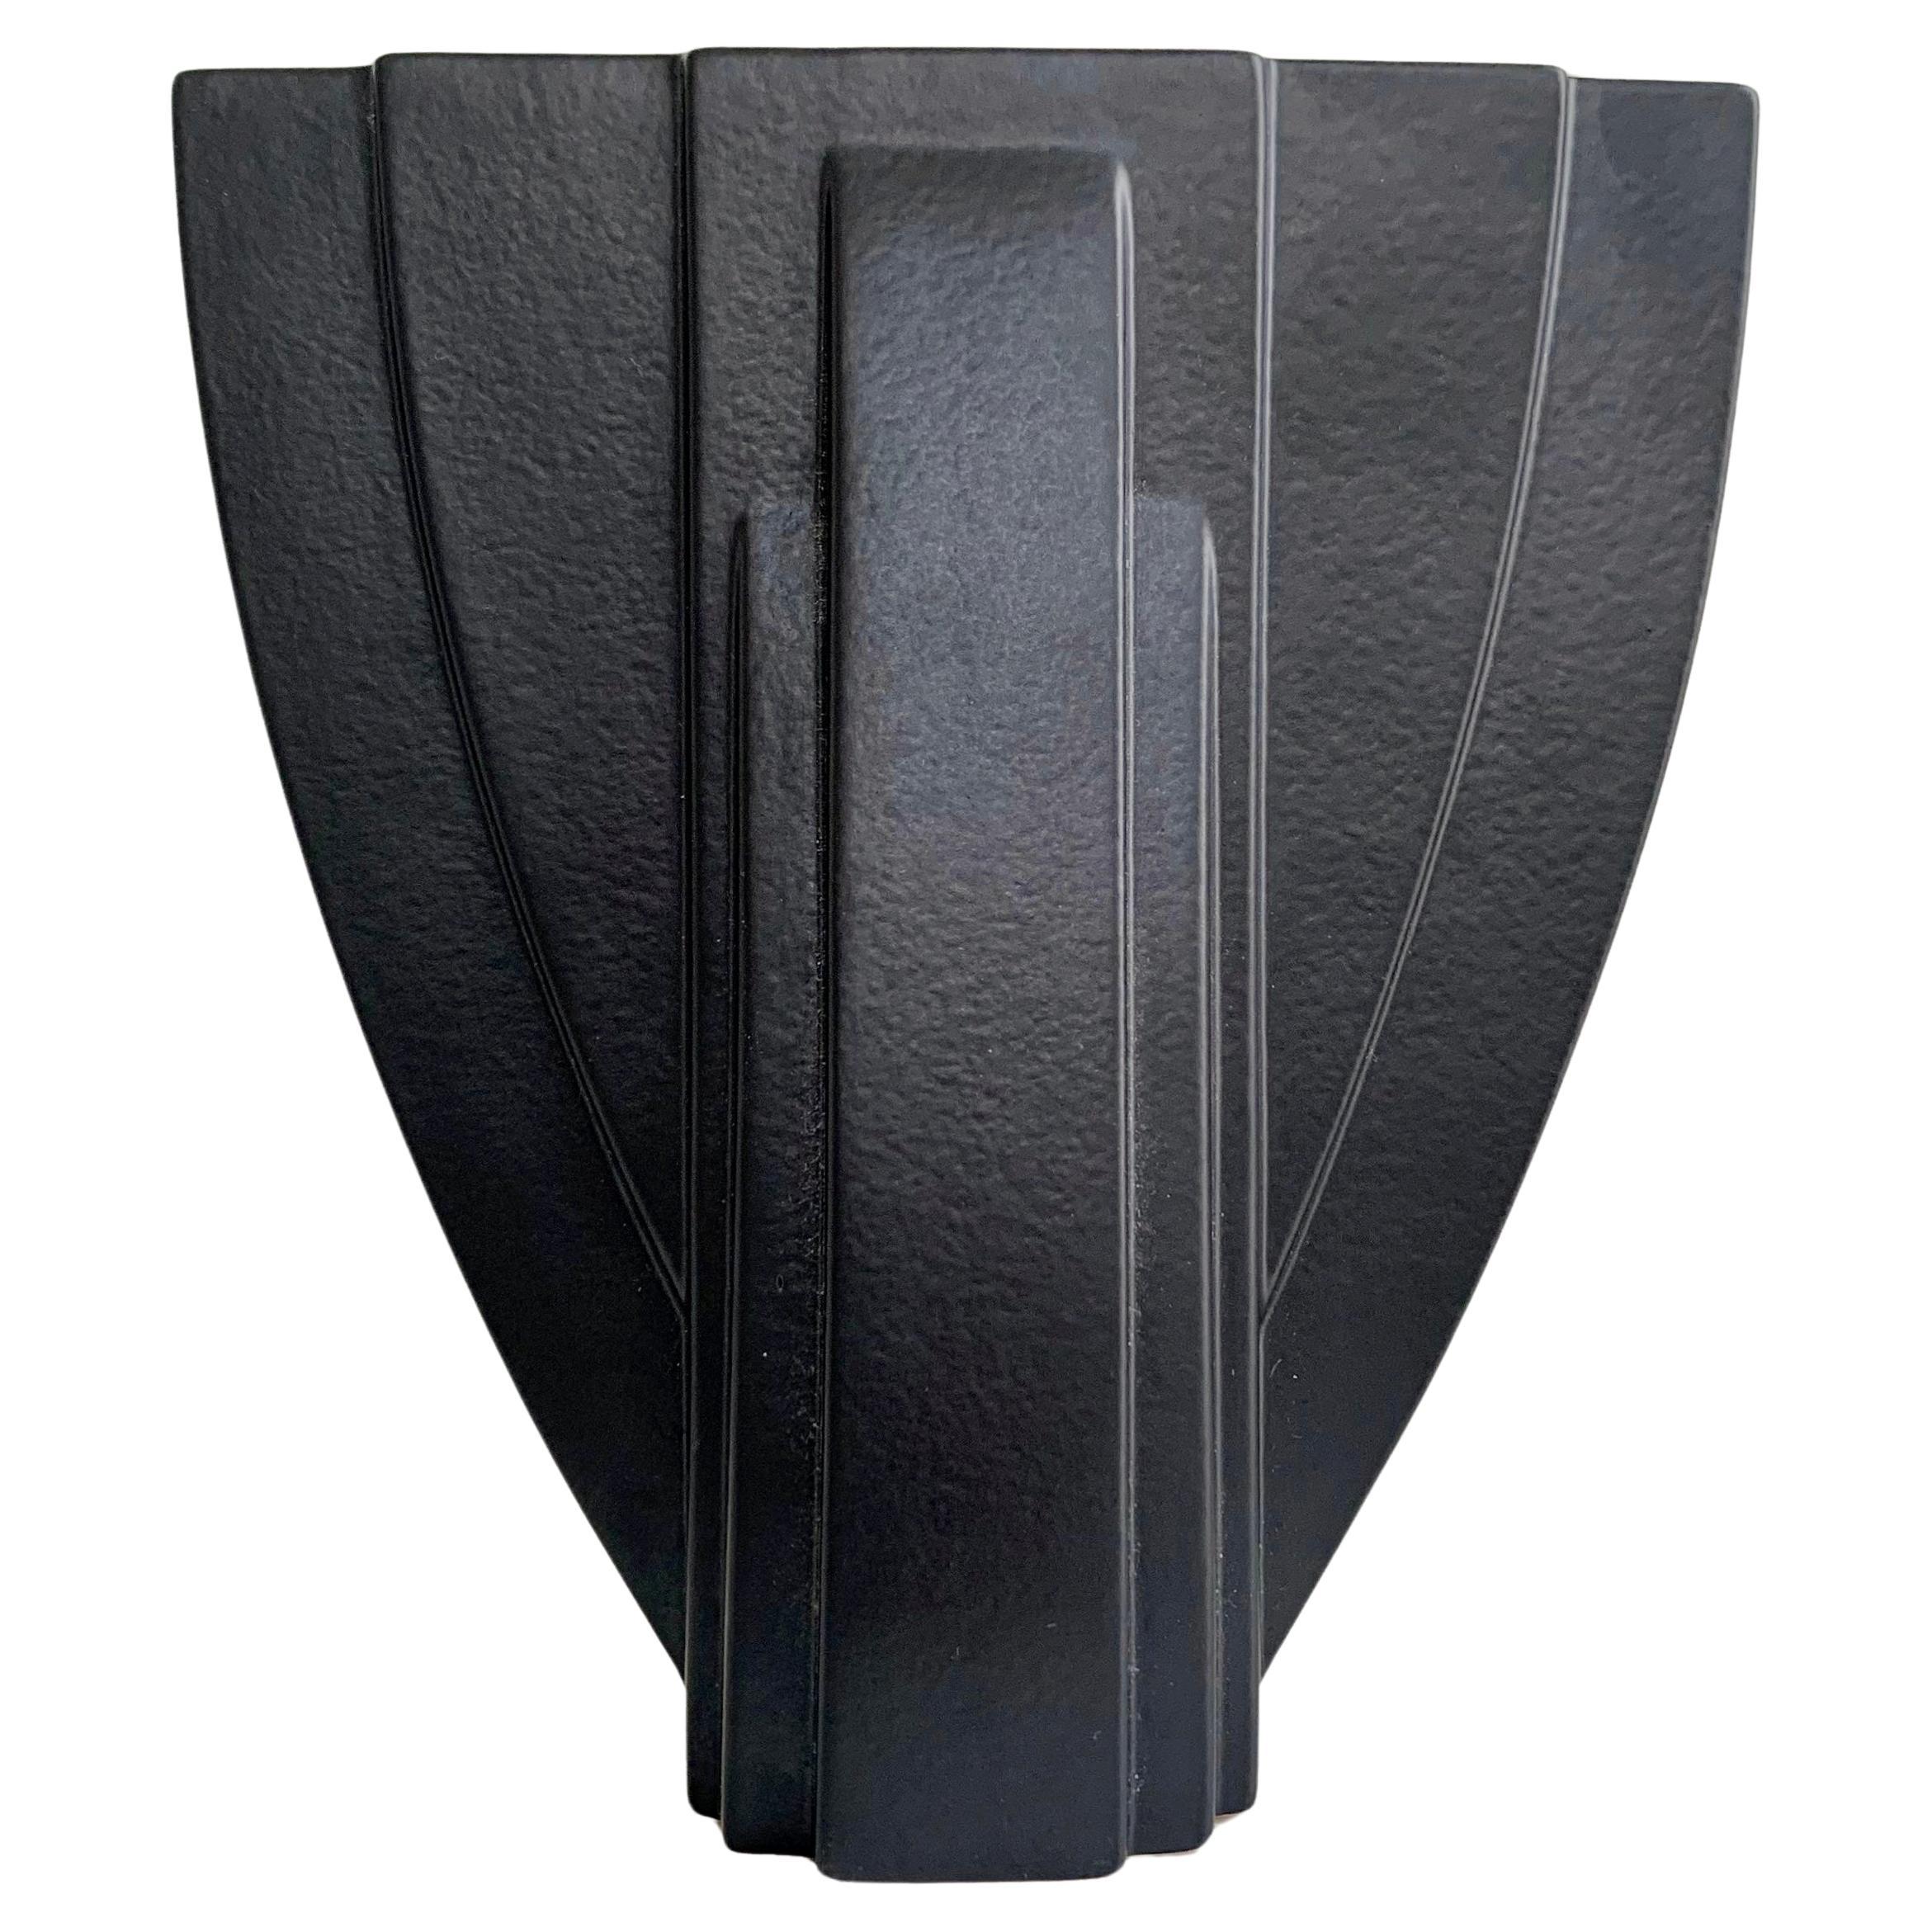 Vase Wolkenkratzer-Modell von Claude Dumas um 1980, Frankreich.
Schwarze Keramik.
Signiert Claude Dumas Made in France unten.
Abmessungen: 20 cm H, 18 cm B, 9 cm T.
Guter Zustand.
Alle Käufe sind durch unsere Käuferschutzgarantie abgedeckt.
Dieser